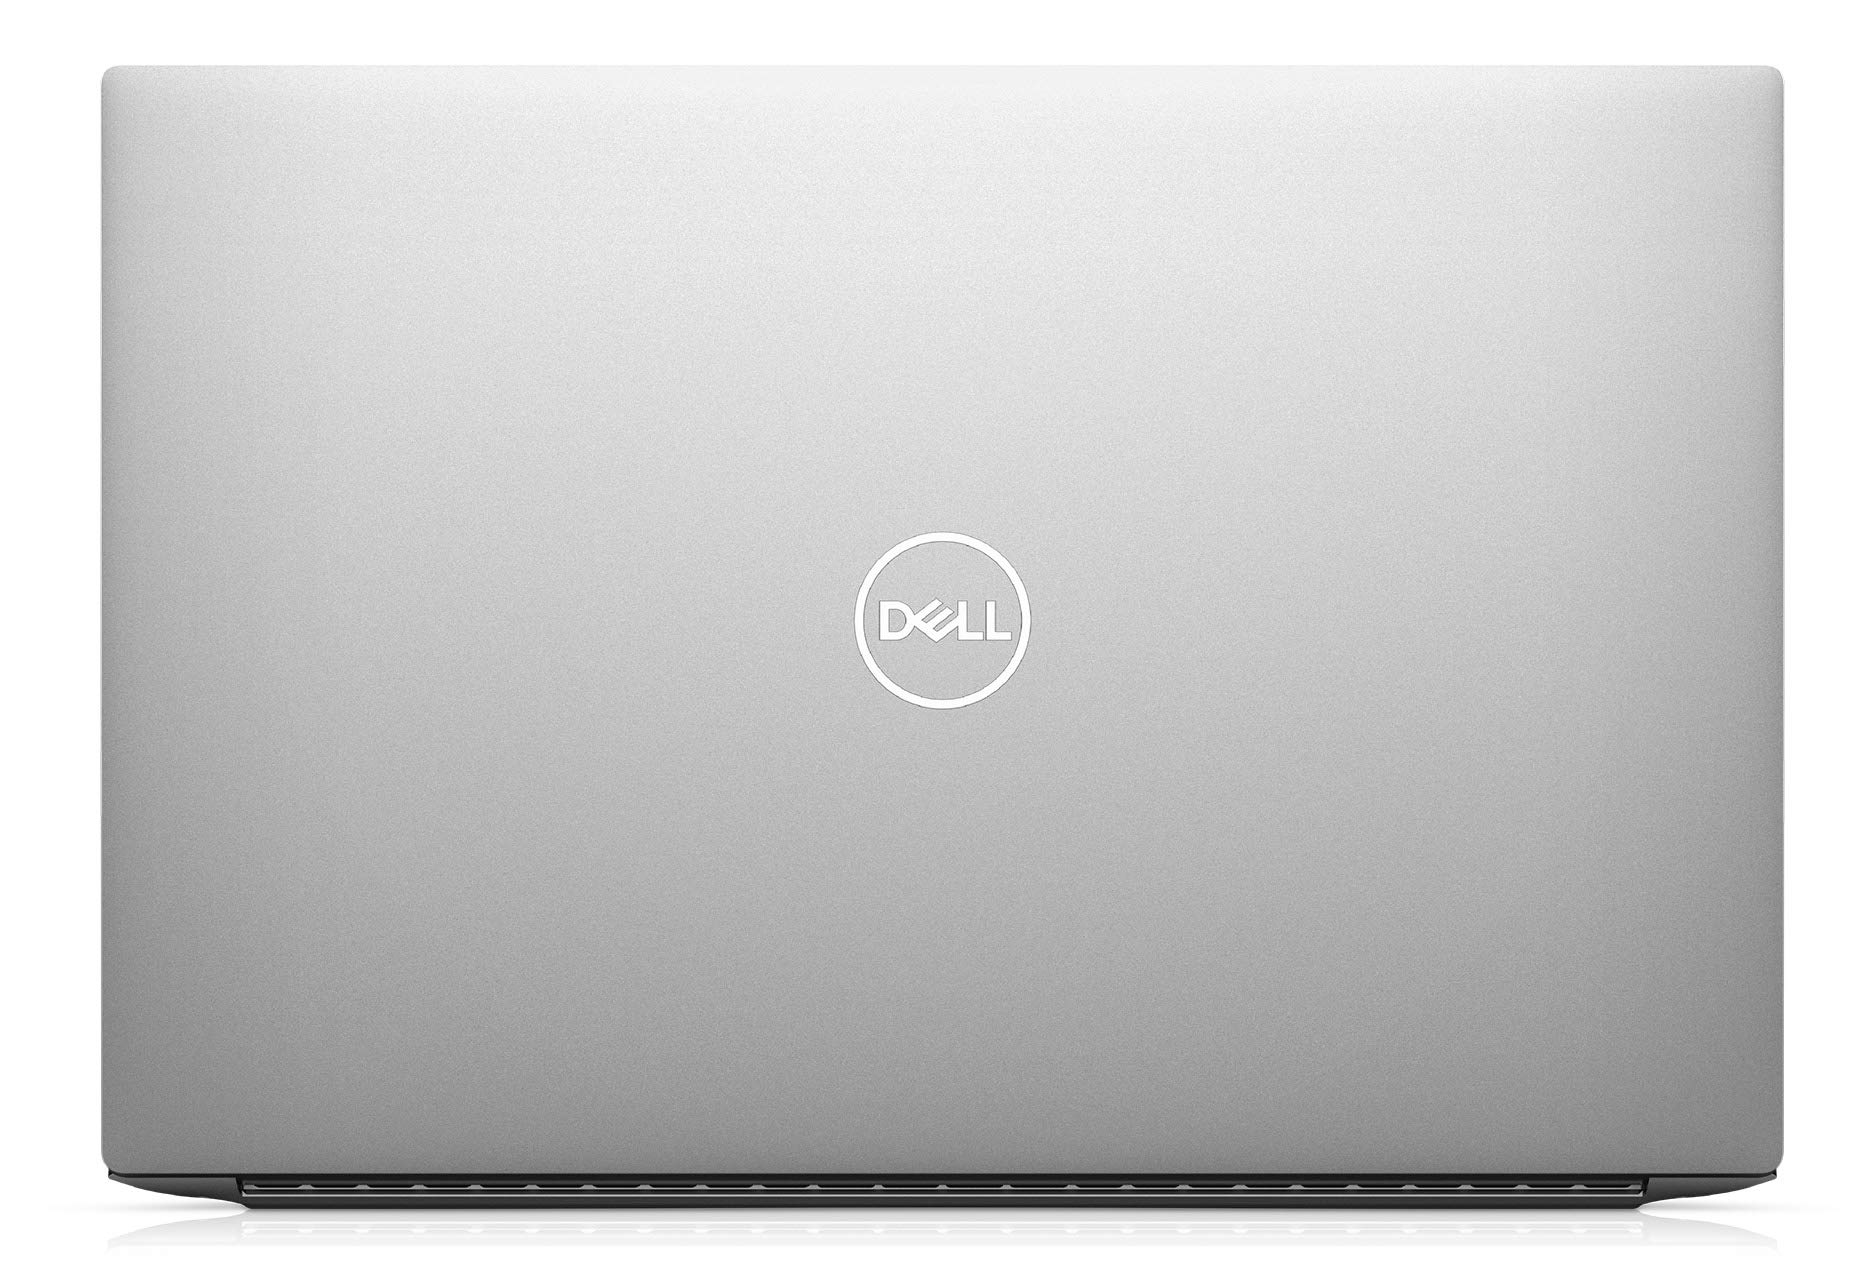 Giới thiệu Dell XPS 15 9500-Khẳng định vị thế